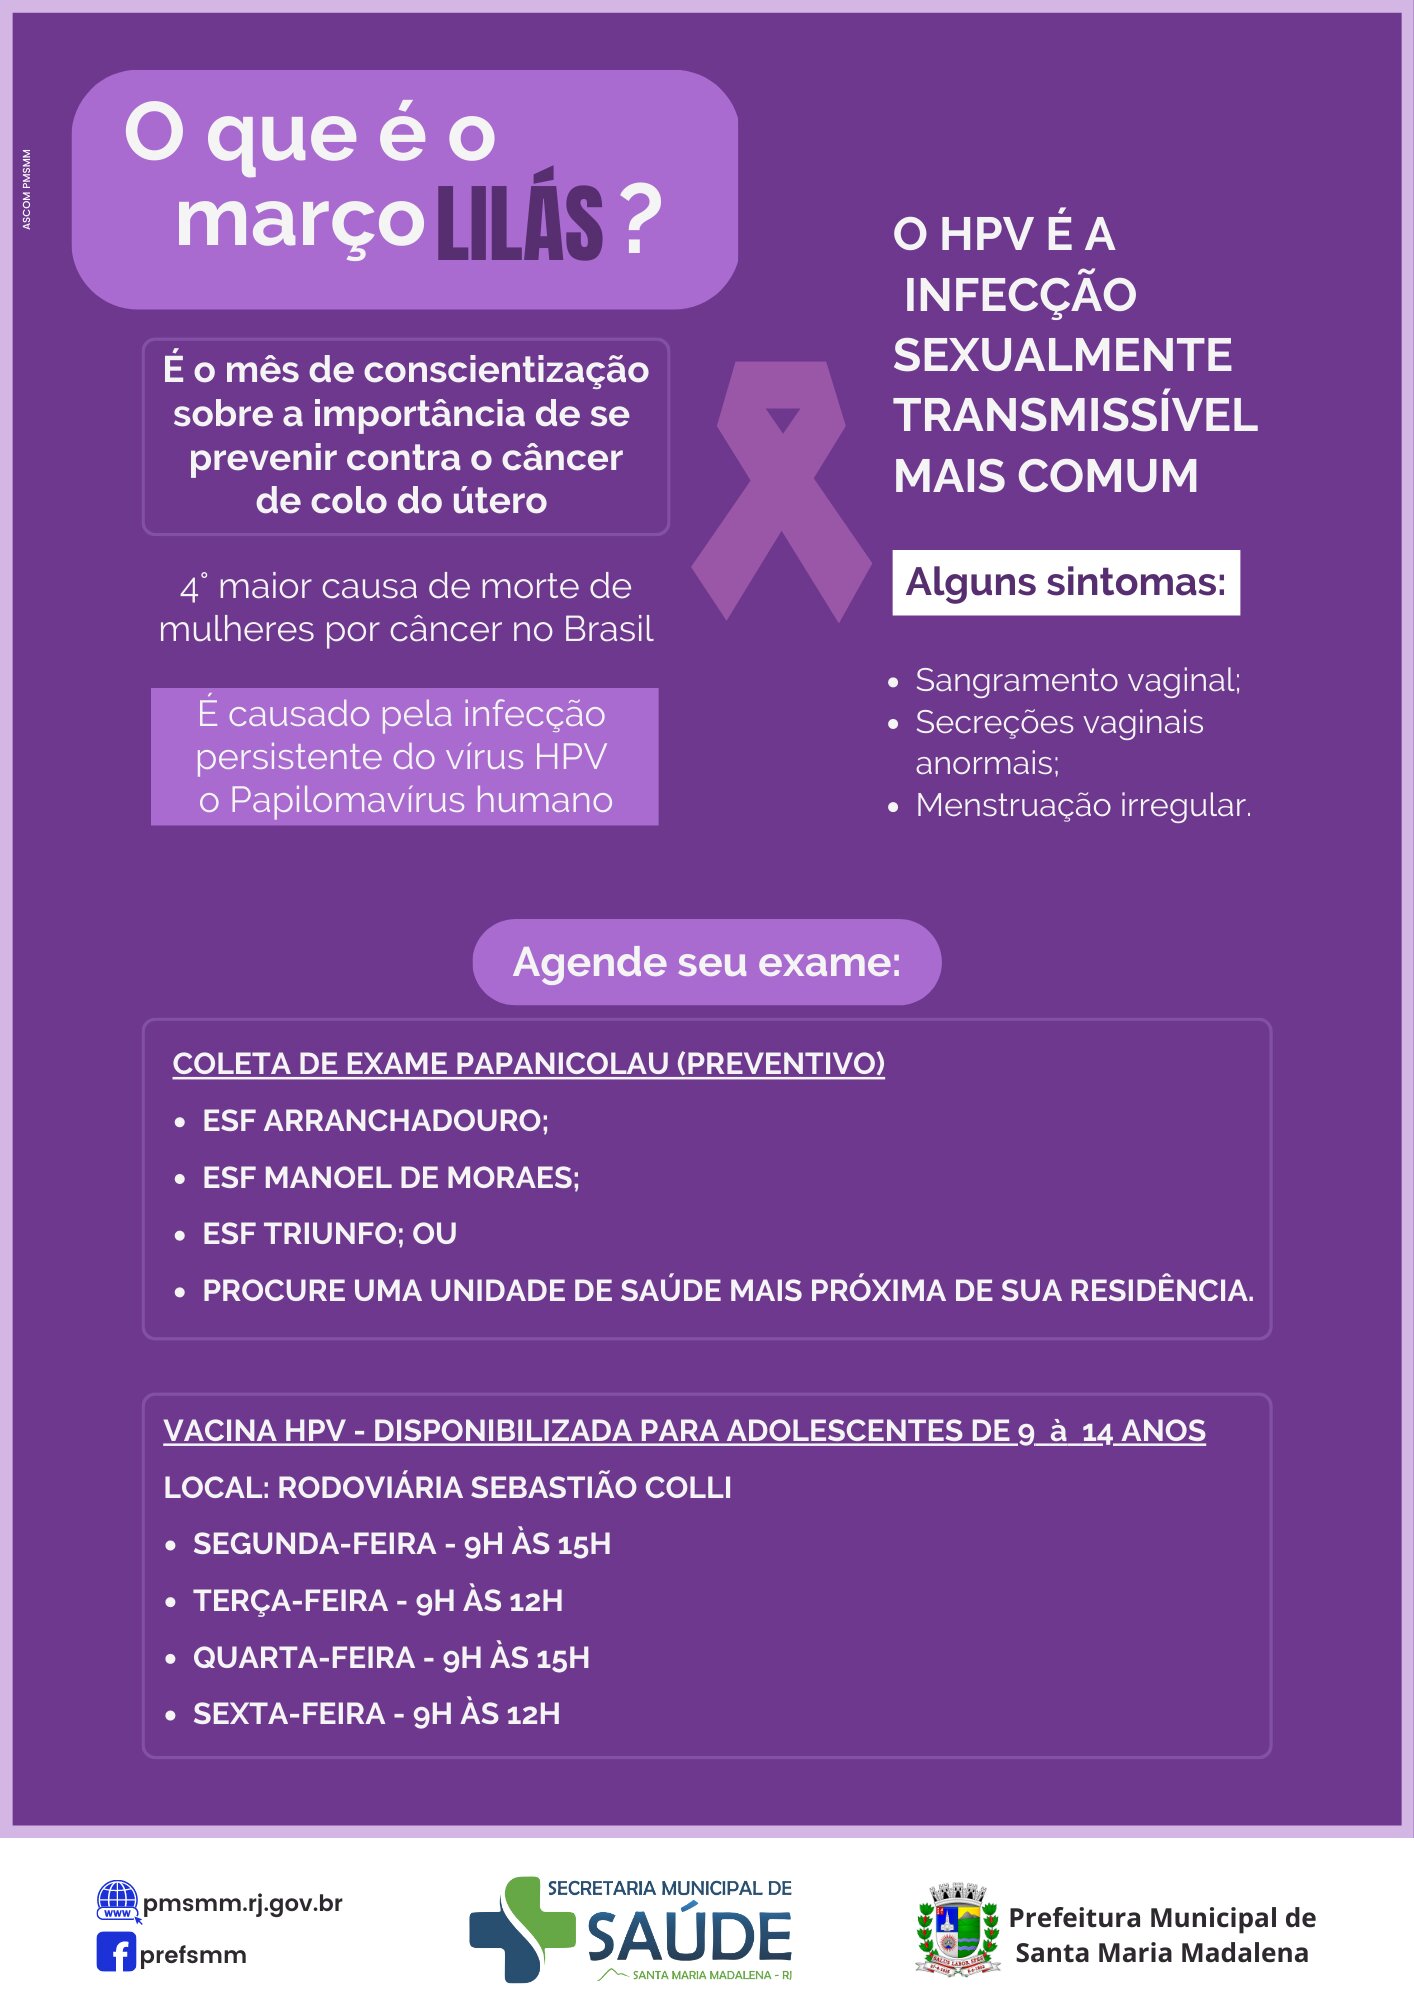 Março Lilás: Saúde feminina e prevenção do câncer de colo do útero